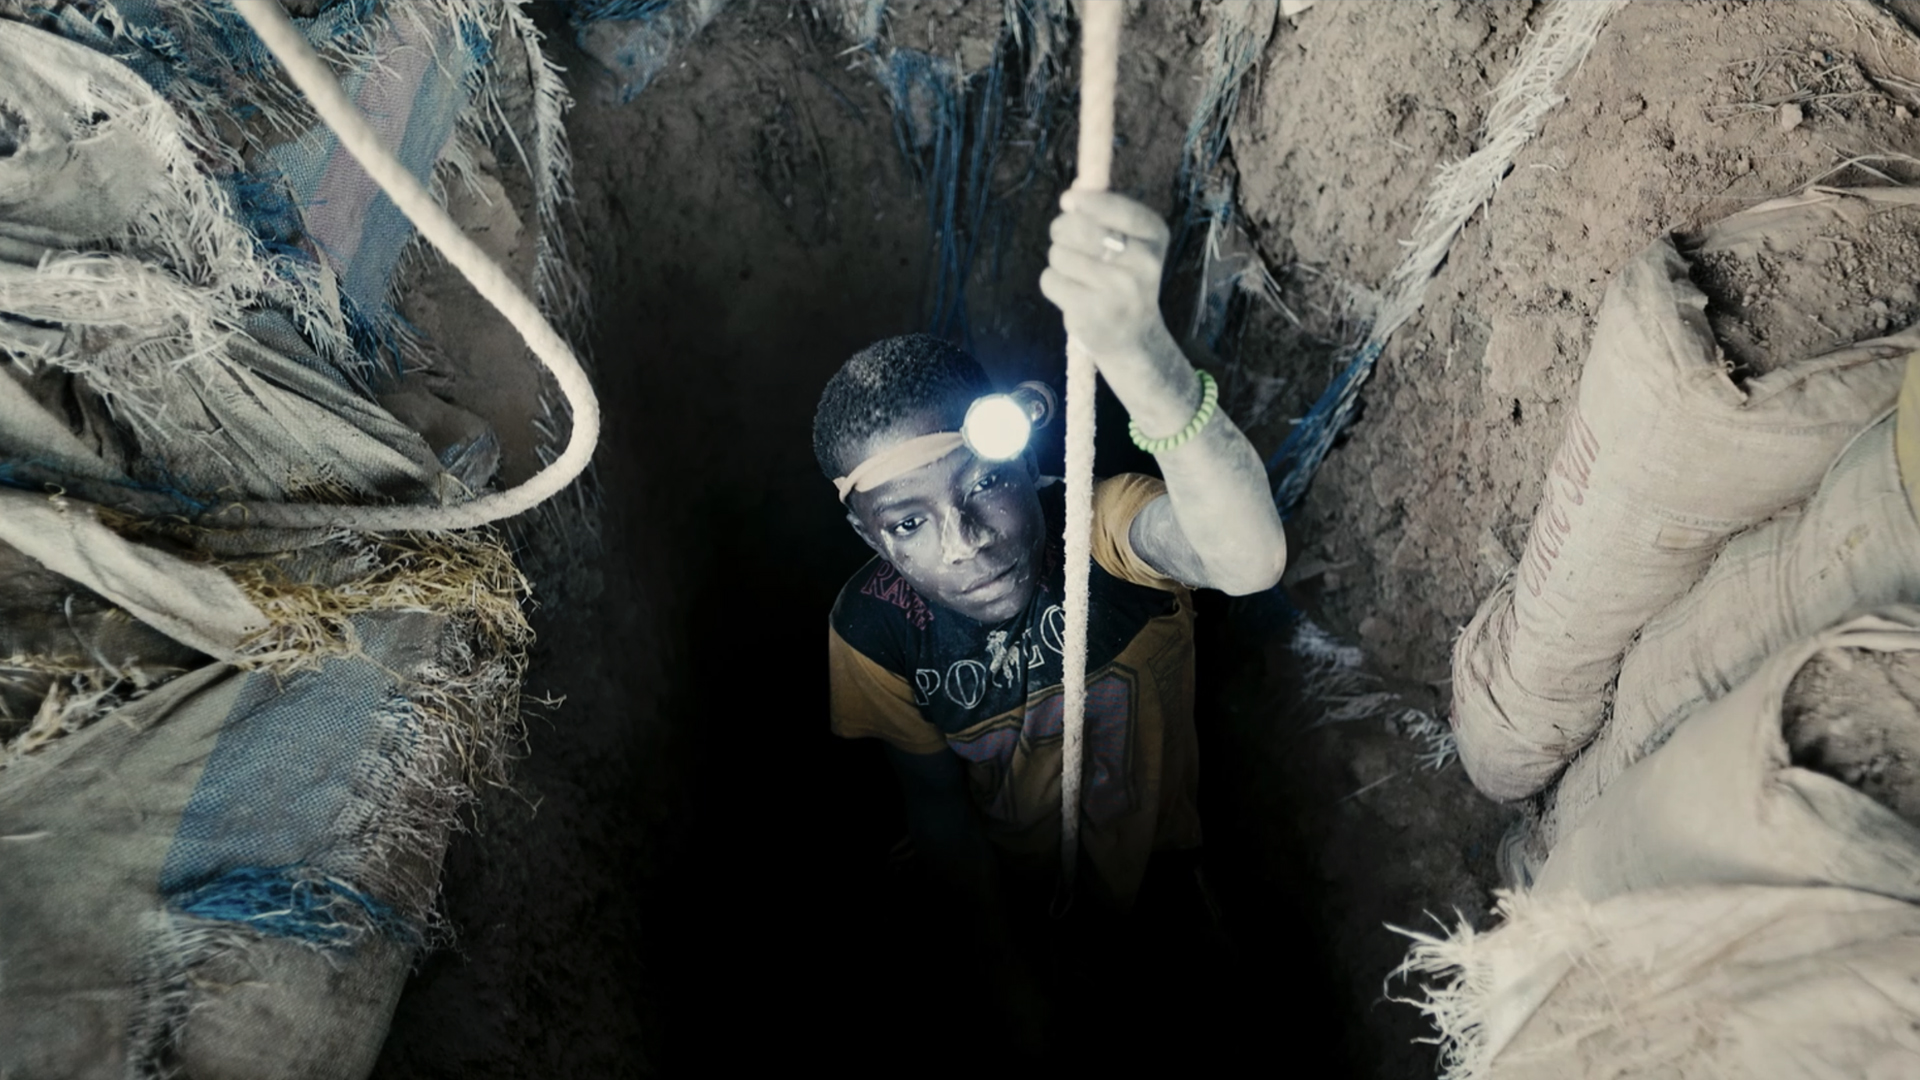 Mladý africký chlapec s čelovkou na hlavě se na laně spouští do hluboké černé díry pro vodu. /A young African boy with a headlamp on his head descends on a rope into a deep black hole for water.